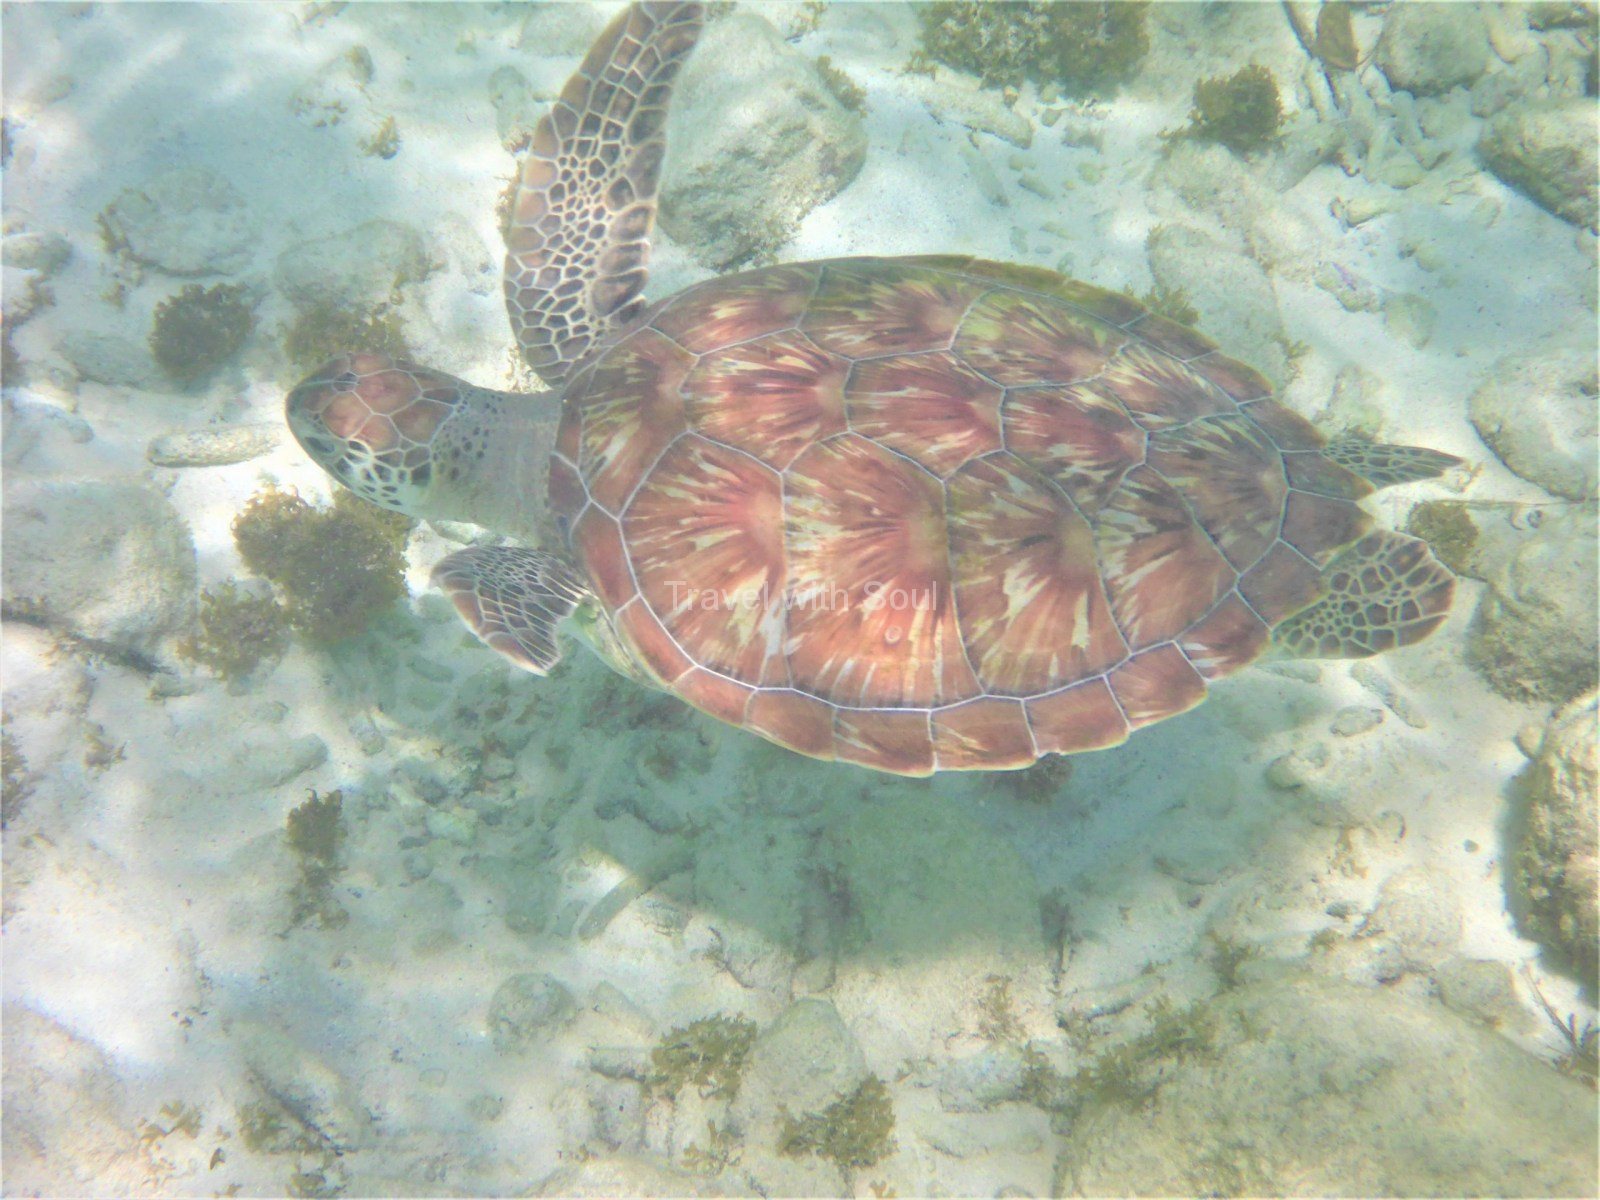 Schwimmen mit der Schildkröte